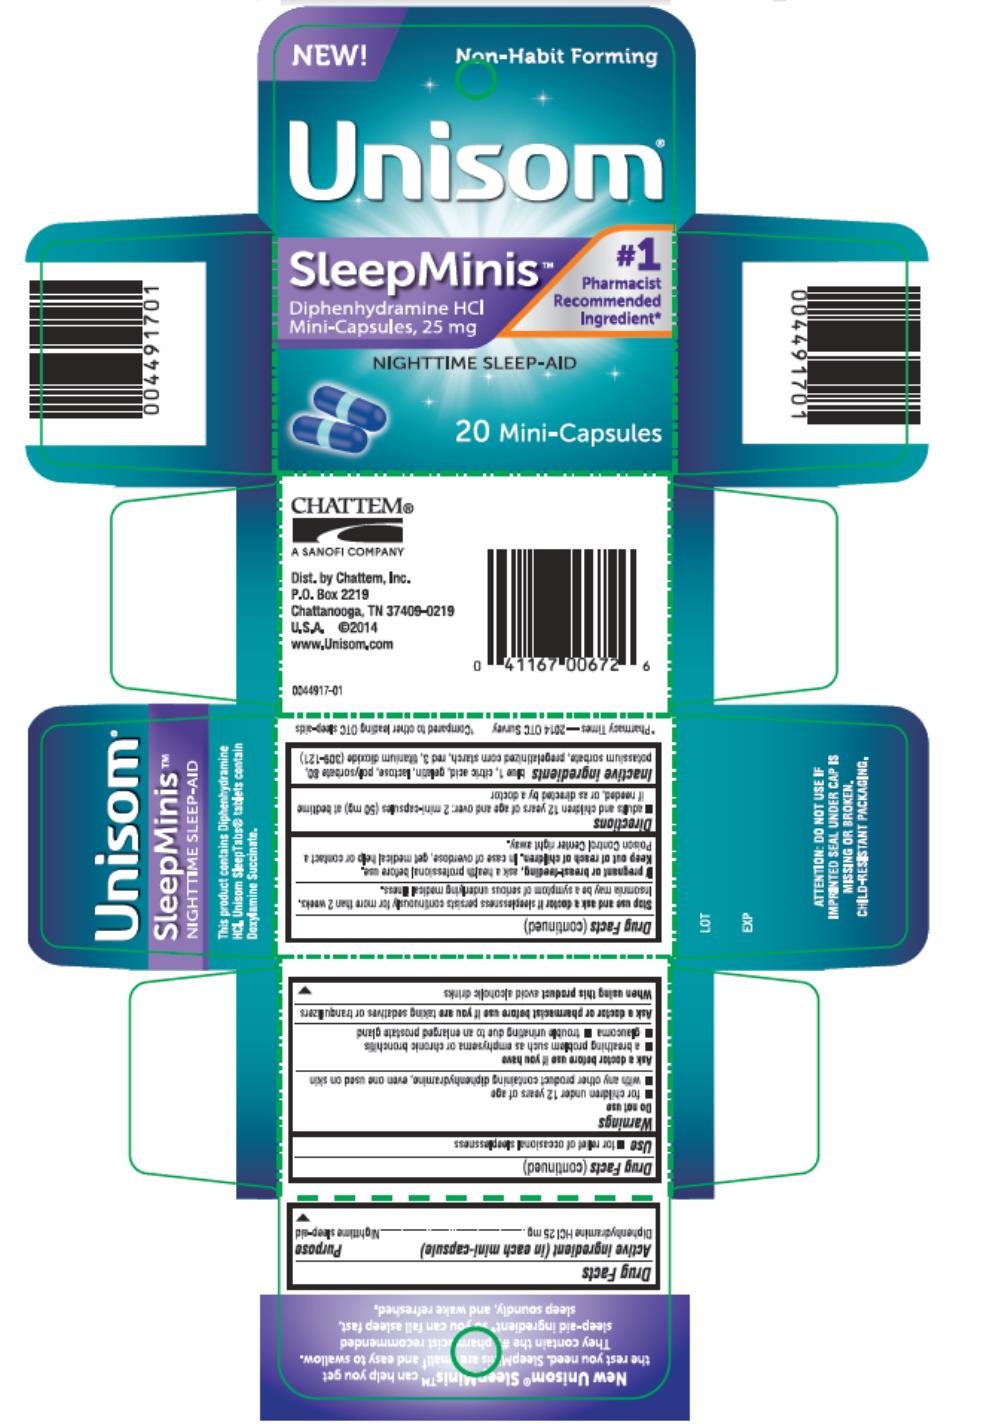 Unisom
#1 Pharmacist Recommended Ingredient*  
SleepMinis
Diphenhydramine HCI 
Mini-Capsules, 25 mg
NIGHTTIME SLEEP-AID
20 Mini-Capsules
